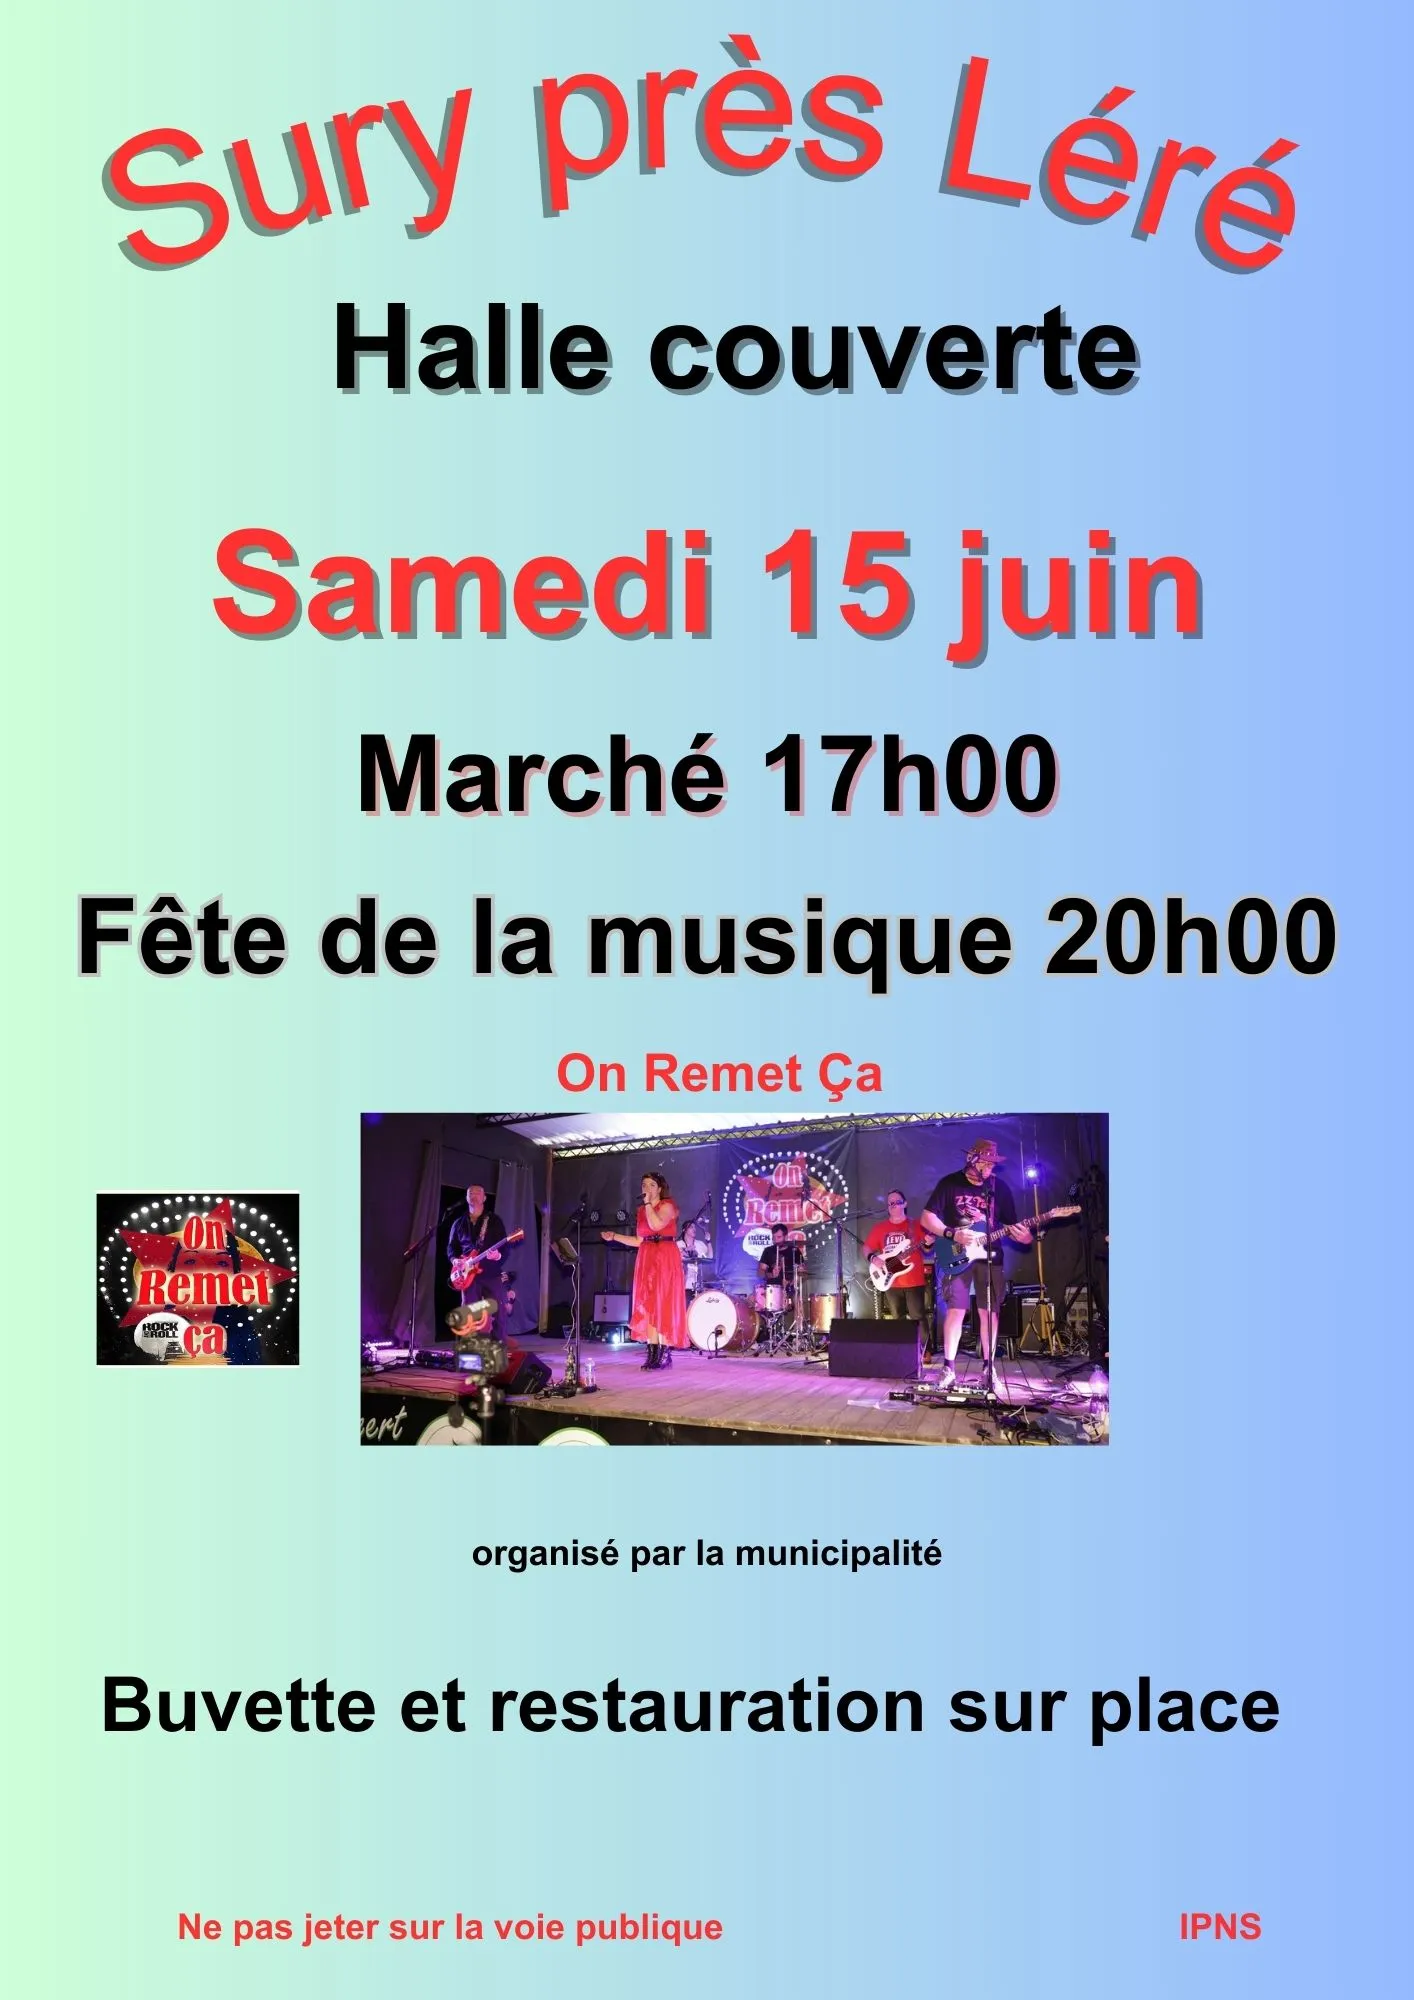 Image qui illustre: Marché Du Terroir Et Fête De La Musique à Sury-près-Léré - 1